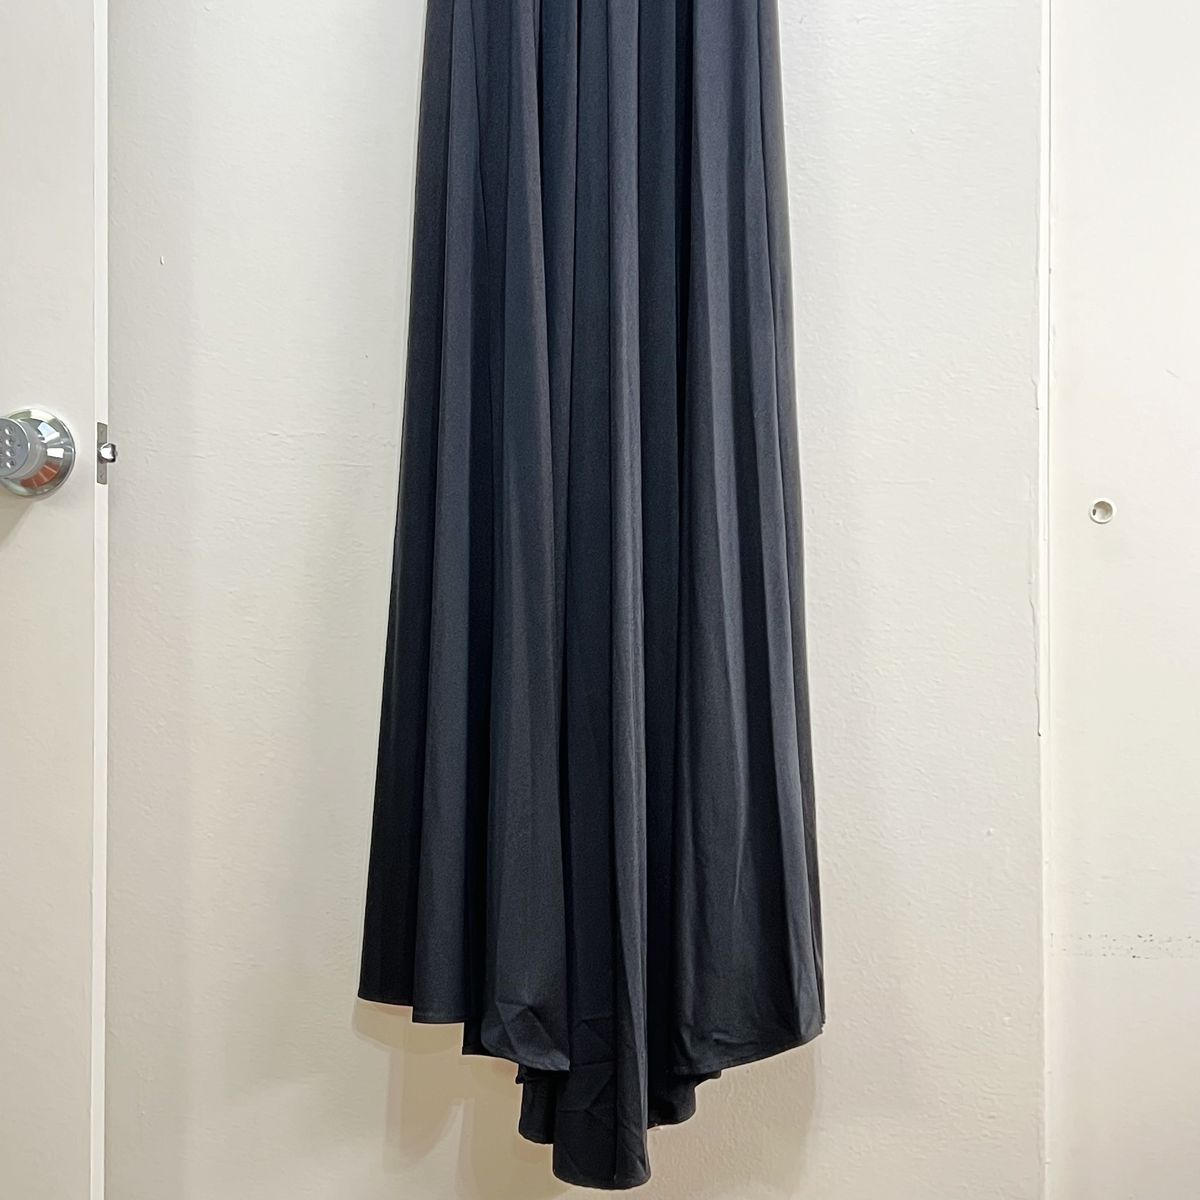 Style 28547 La Femme Size 12 Plunge Black Side Slit Dress on Queenly